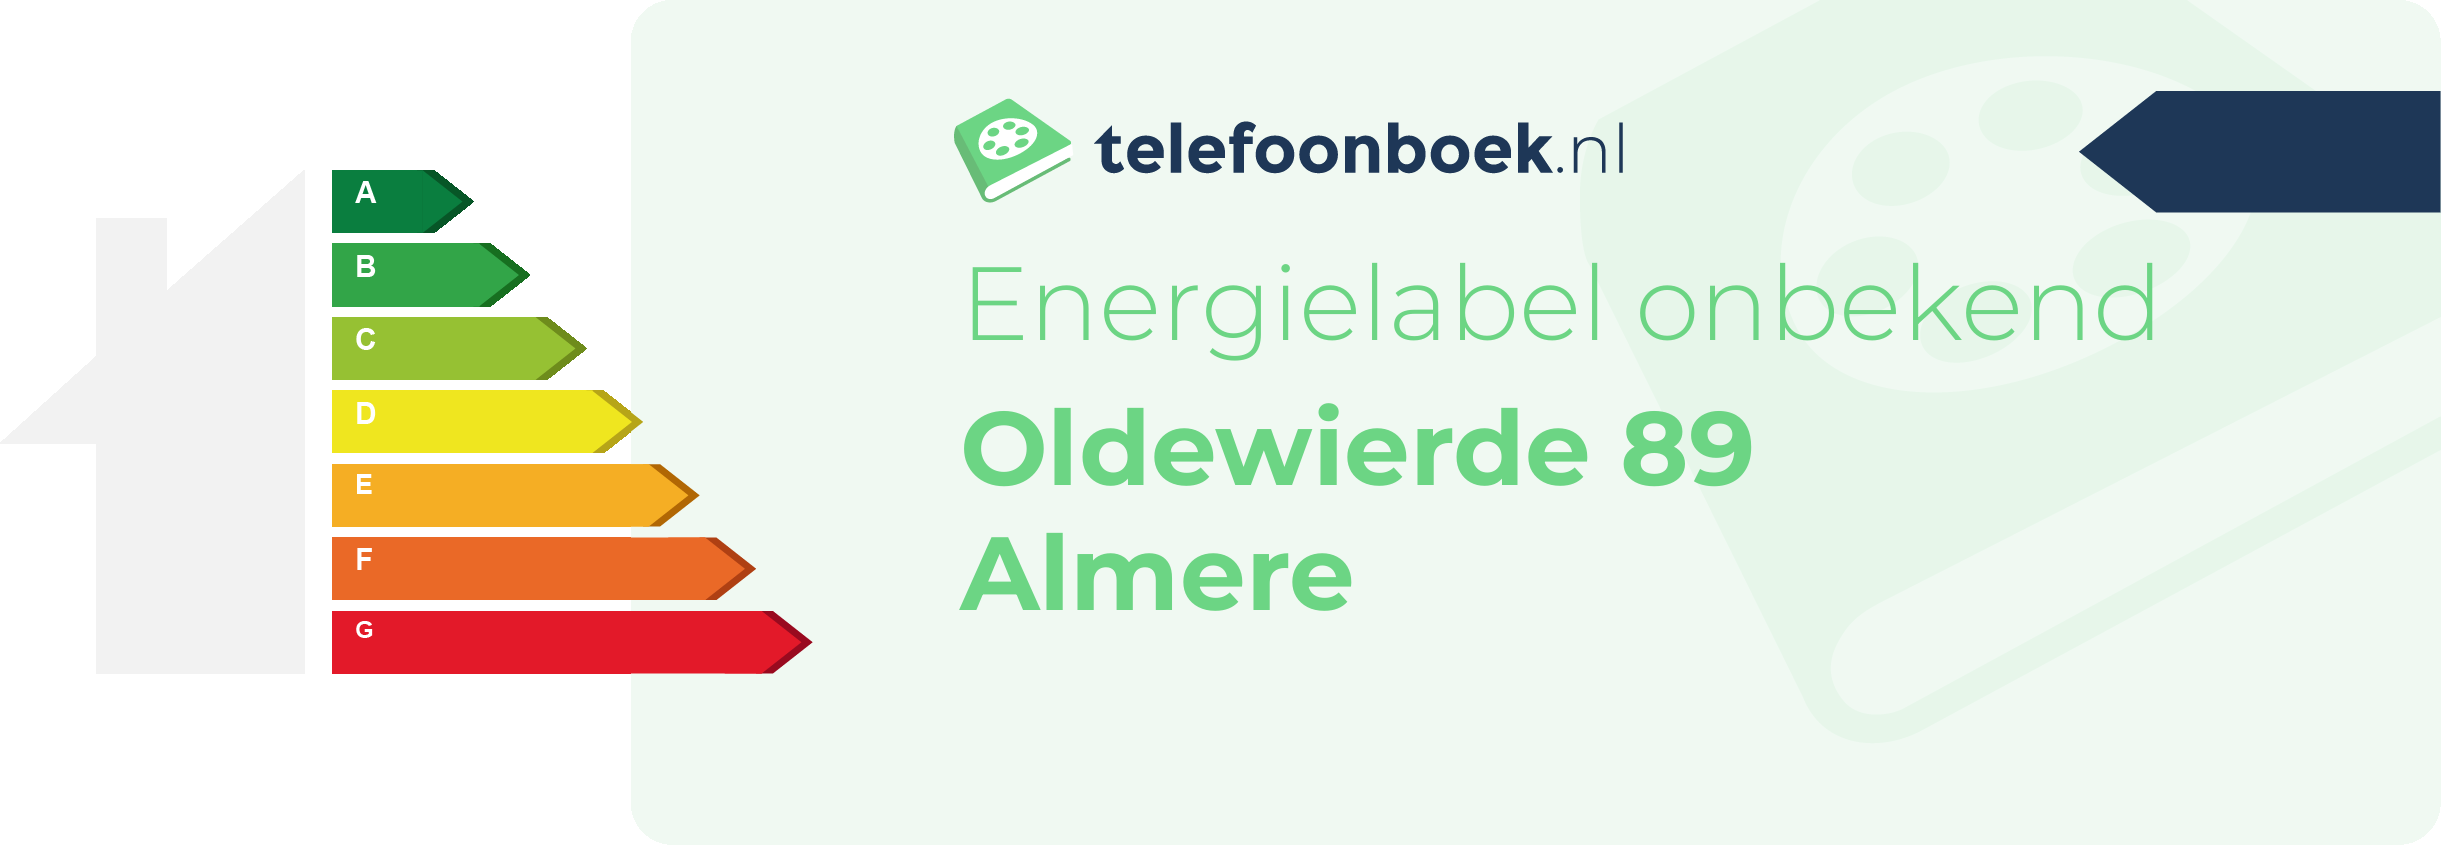 Energielabel Oldewierde 89 Almere